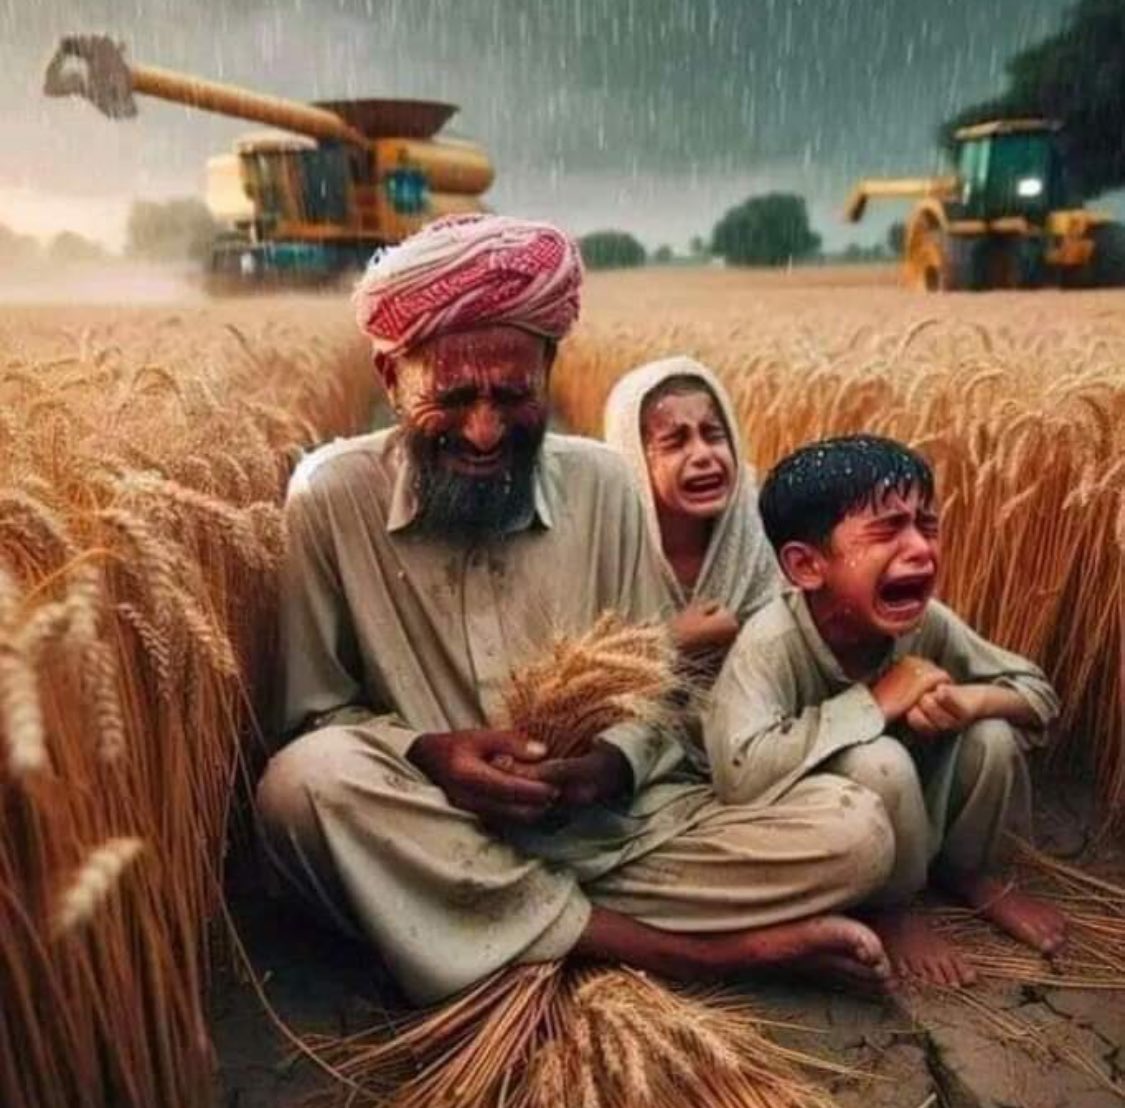 پاکستان کا کسان اپنی گندم کھیتوں میں روتے بچوں کے ساتھ لیکر بیٹھا ھے لیکن تین مقتدر فورم میں دو کی پریس کانفرنسیں اور تیسری پریس کانفرنس نما سماعت سنی ایک میں گذشتہ نو مئی کے ملک دشمن ایجنڈے پر ملکی املاک کو نقصان پہنچانے والوں سے نمٹنے کی بات تھی جس سے ھمُ نے نہی انہوں نے خود